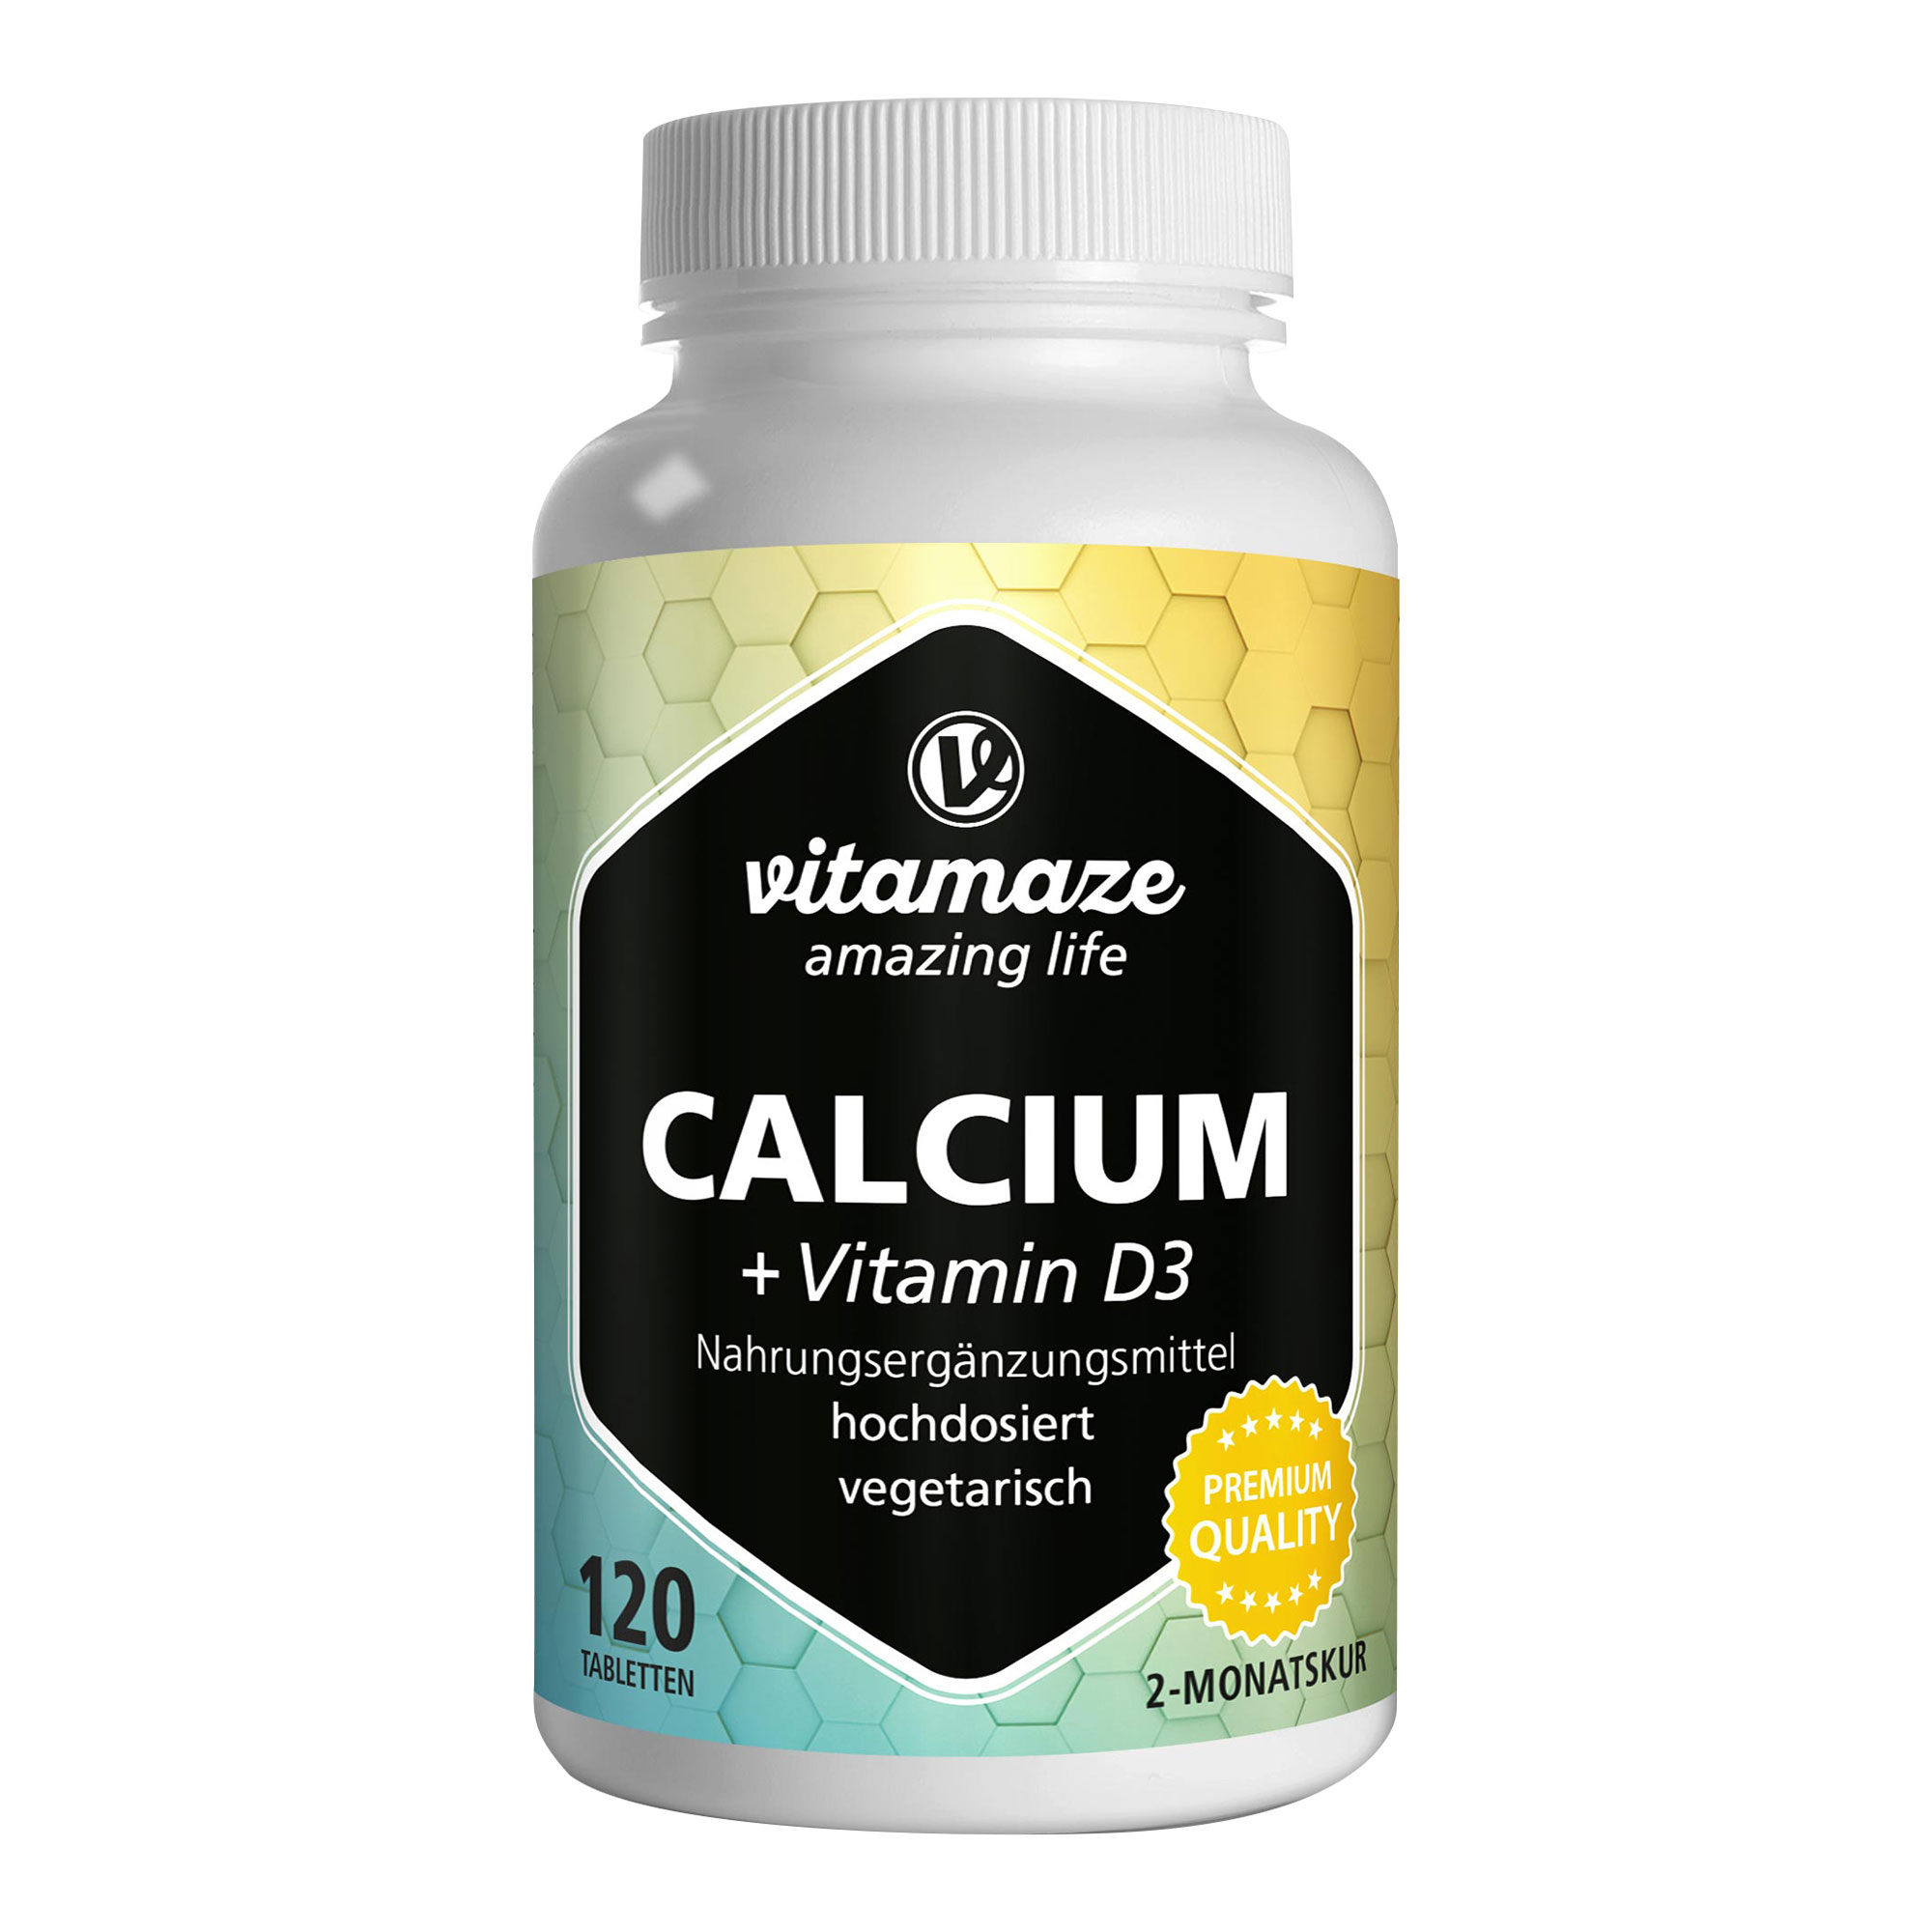 Nahrungsergänzungsmittel mit Calcium und Vitamin D3. Zur Erhaltung normaler Knochen und Zähne.